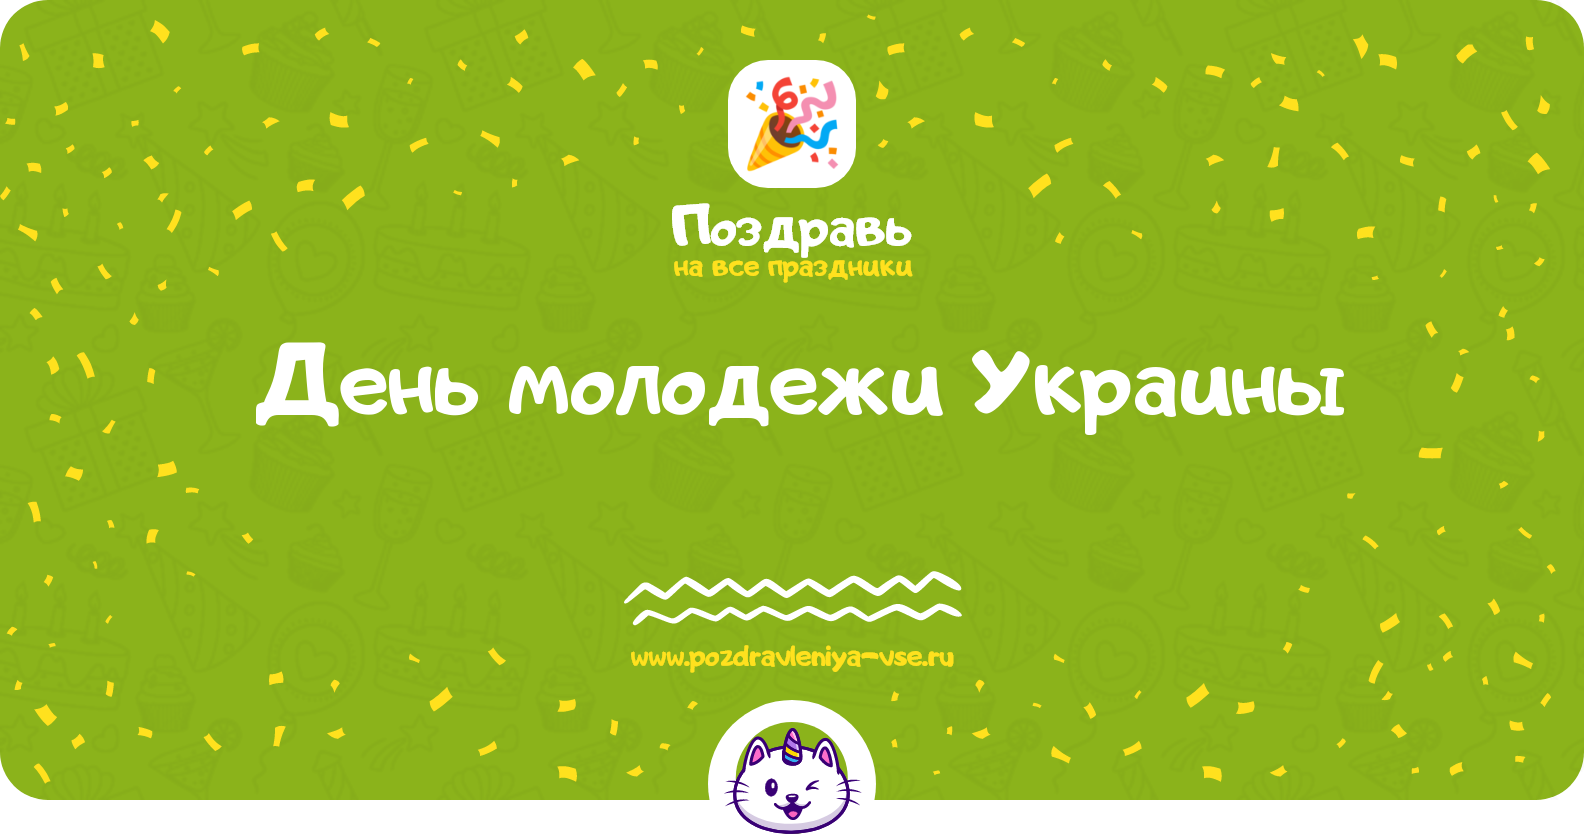 День молодежи Украины — дата праздника, история, поздравления, стихи, проза, смс